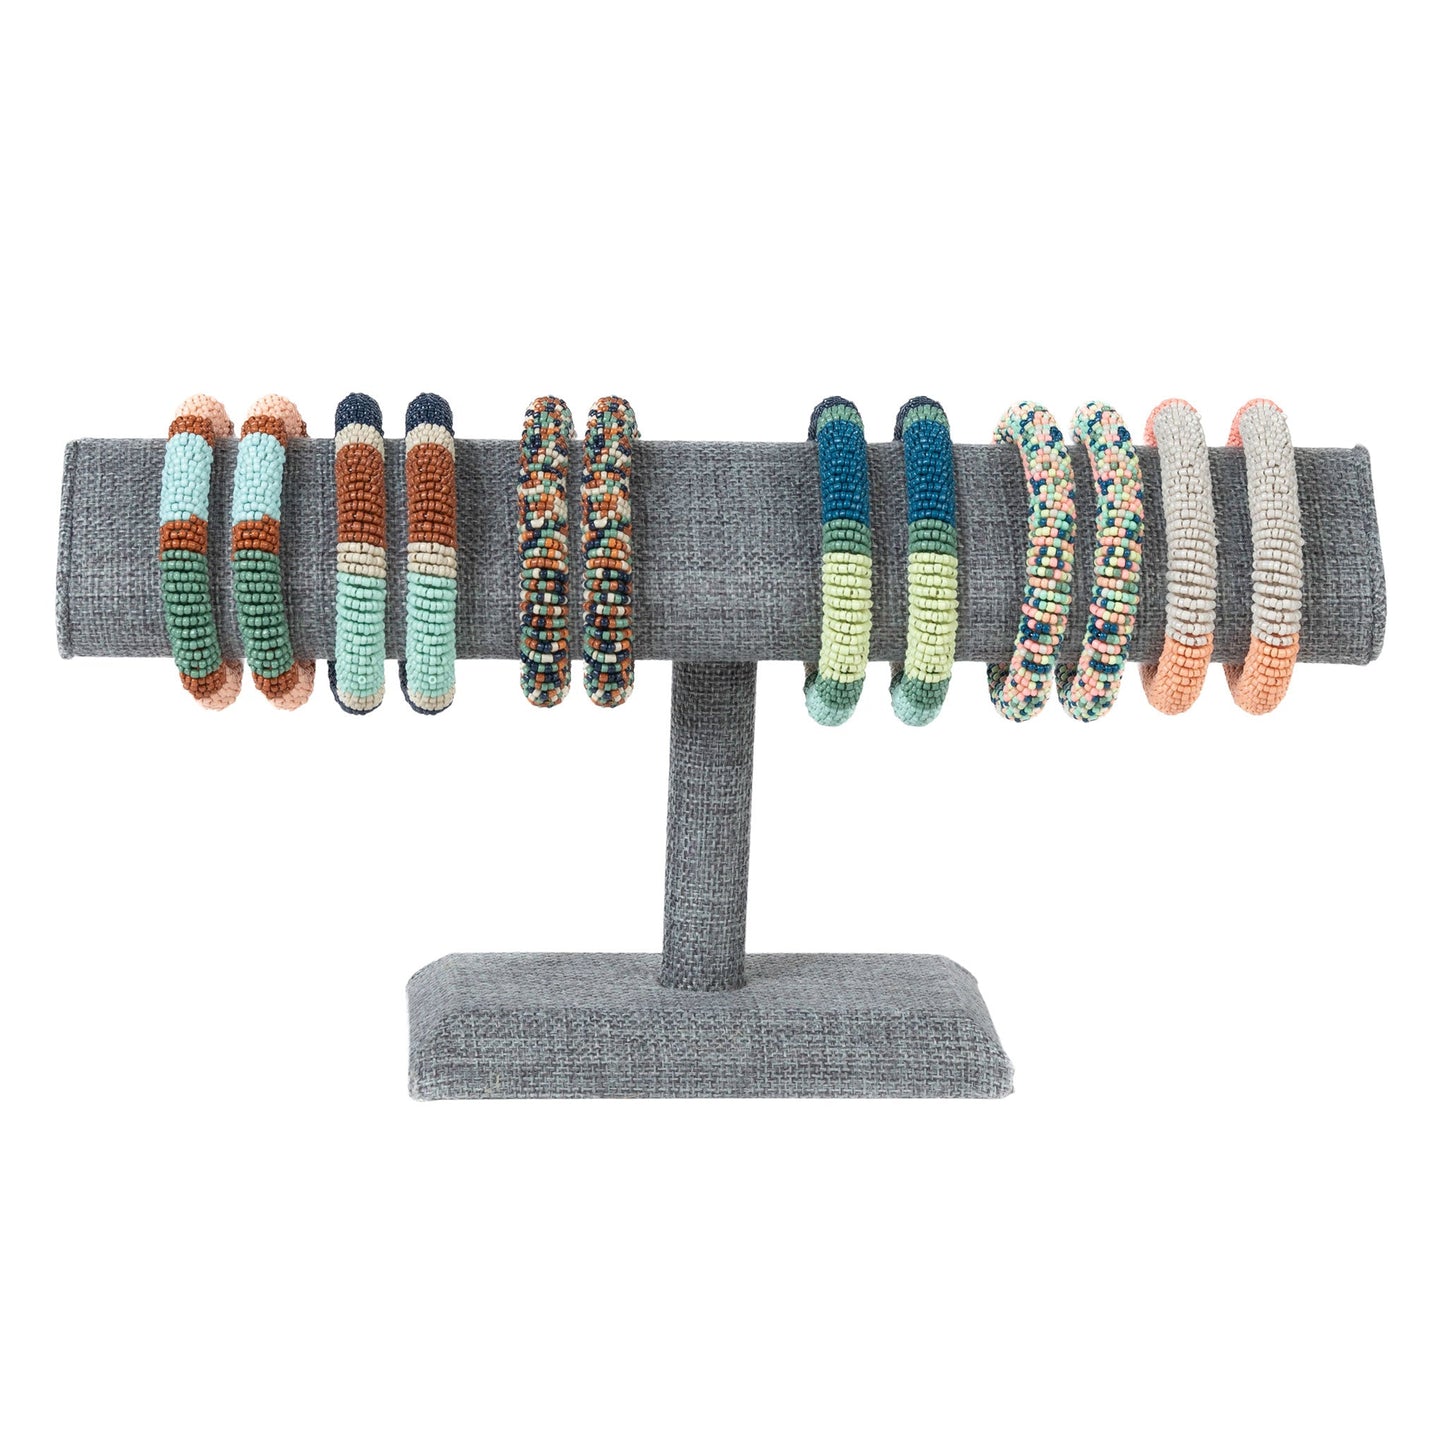 12 Piece Kalea Elastic Seed Bead Bracelet Unit with Display